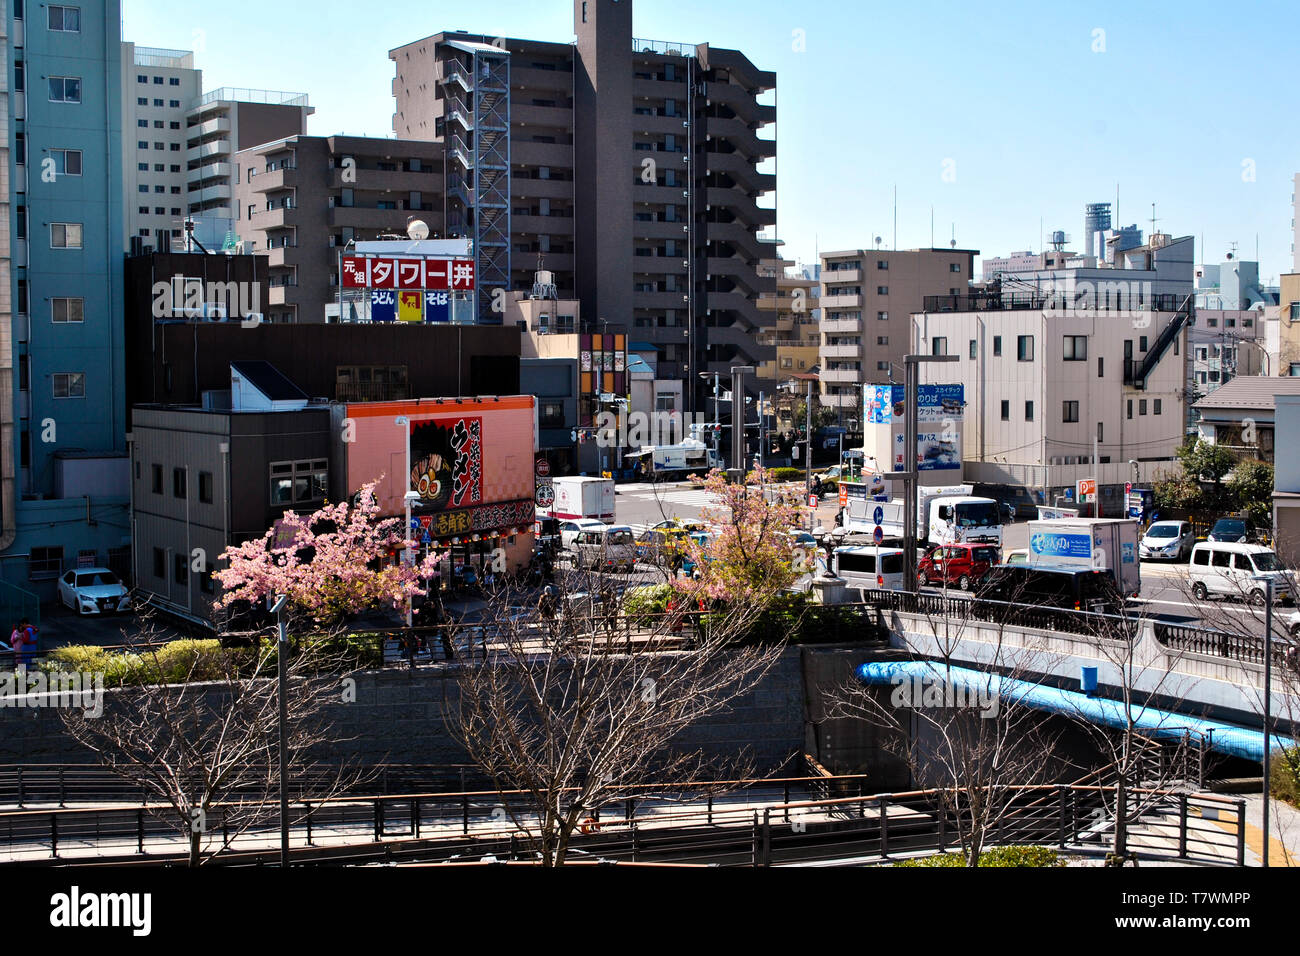 La traversée des rivières entre les bâtiments et les parcs. Rivière Sumida. Sumida, Tokyo, Japon. Banque D'Images